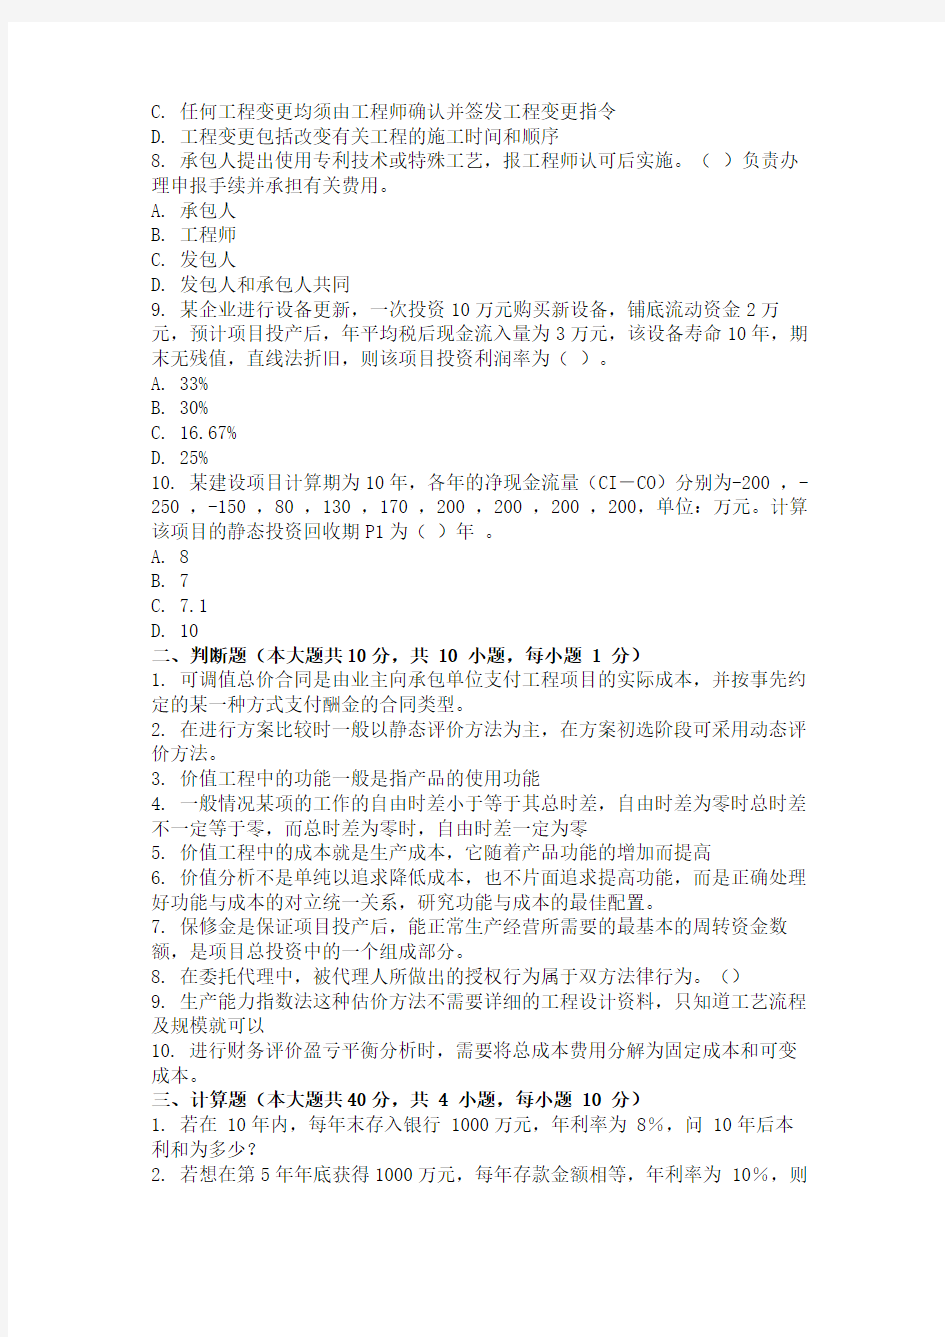 重庆大学网教作业答案-工程造价案例 ( 第3次 )